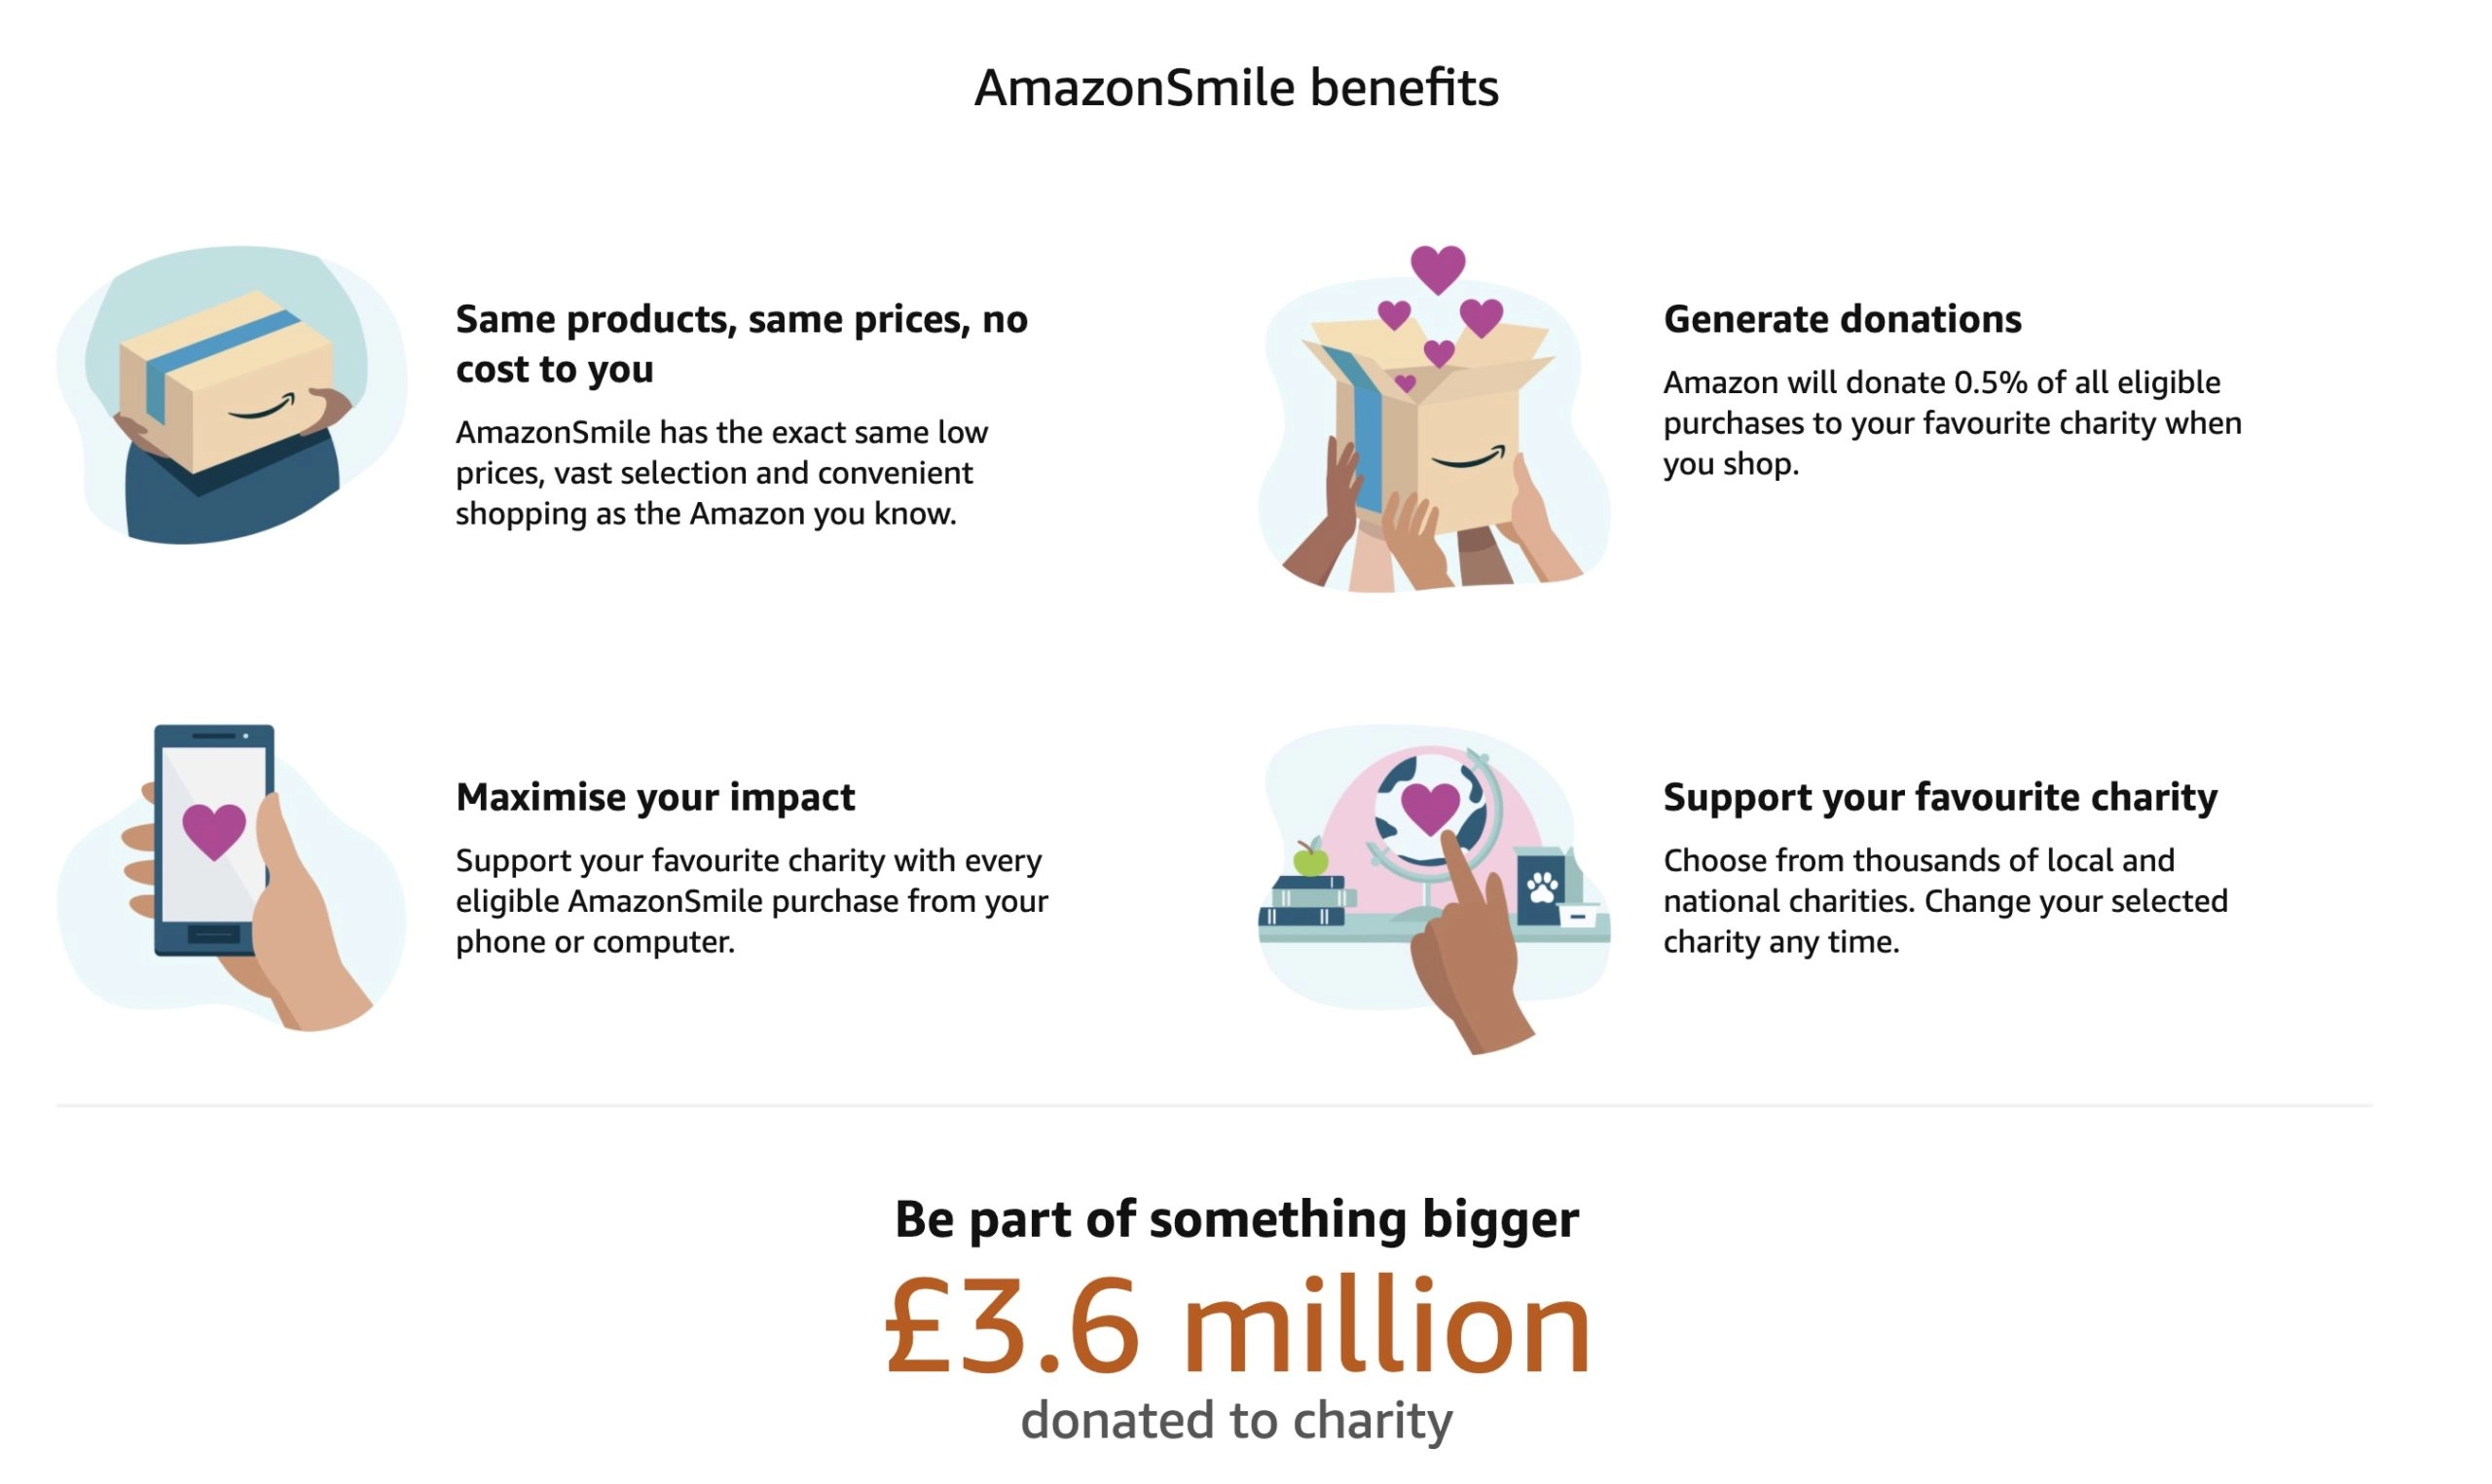 The benefits of Amazon Smile - source: Amazon.co.uk